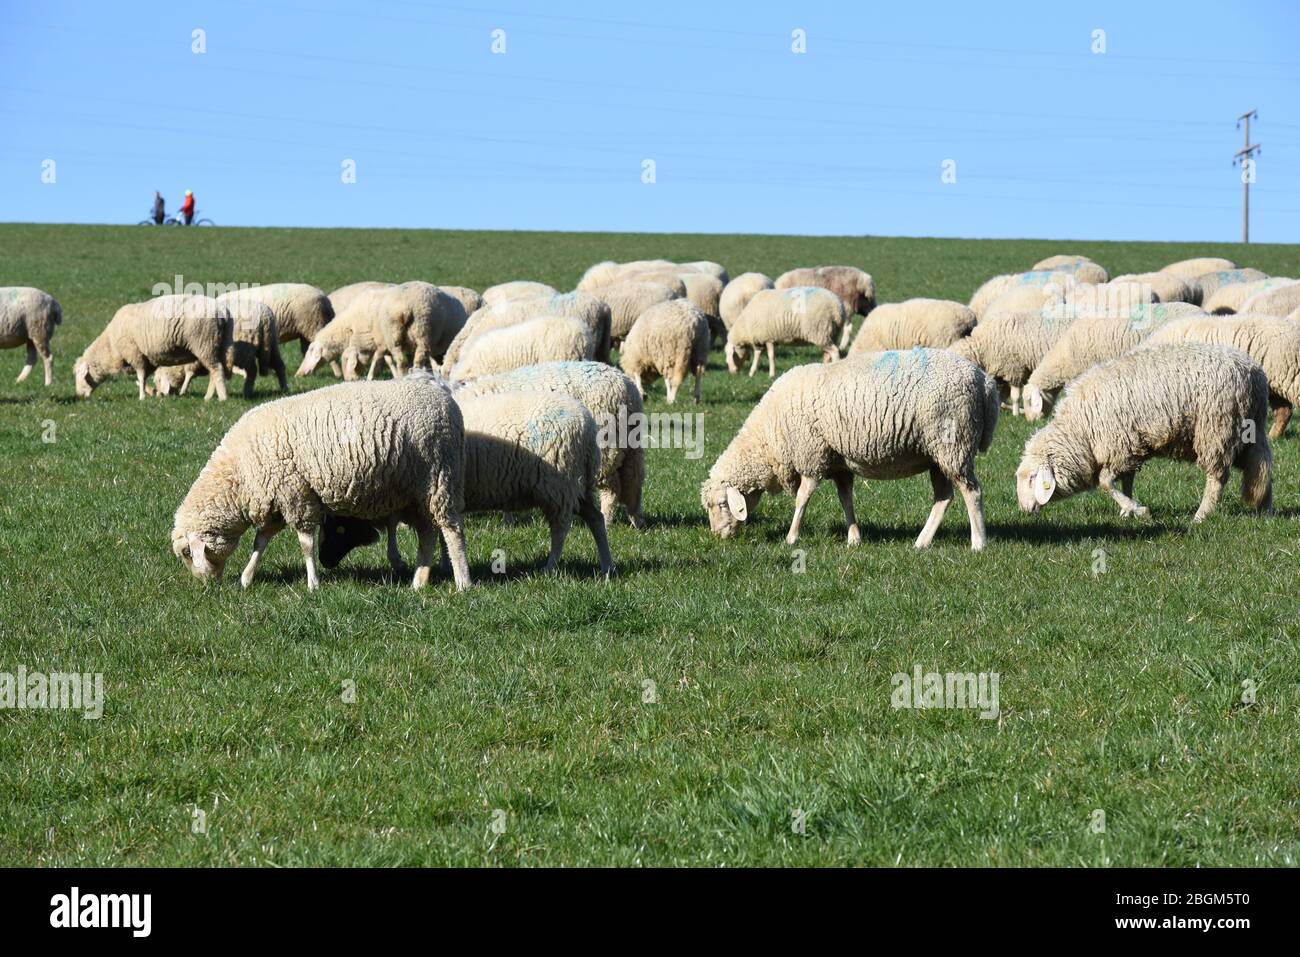 Schafe Ovis sind eine Saeugetiergattung aus der Gruppe der Ziegenartigen. Ovis sheep are a mammal from the goat group. Stock Photo